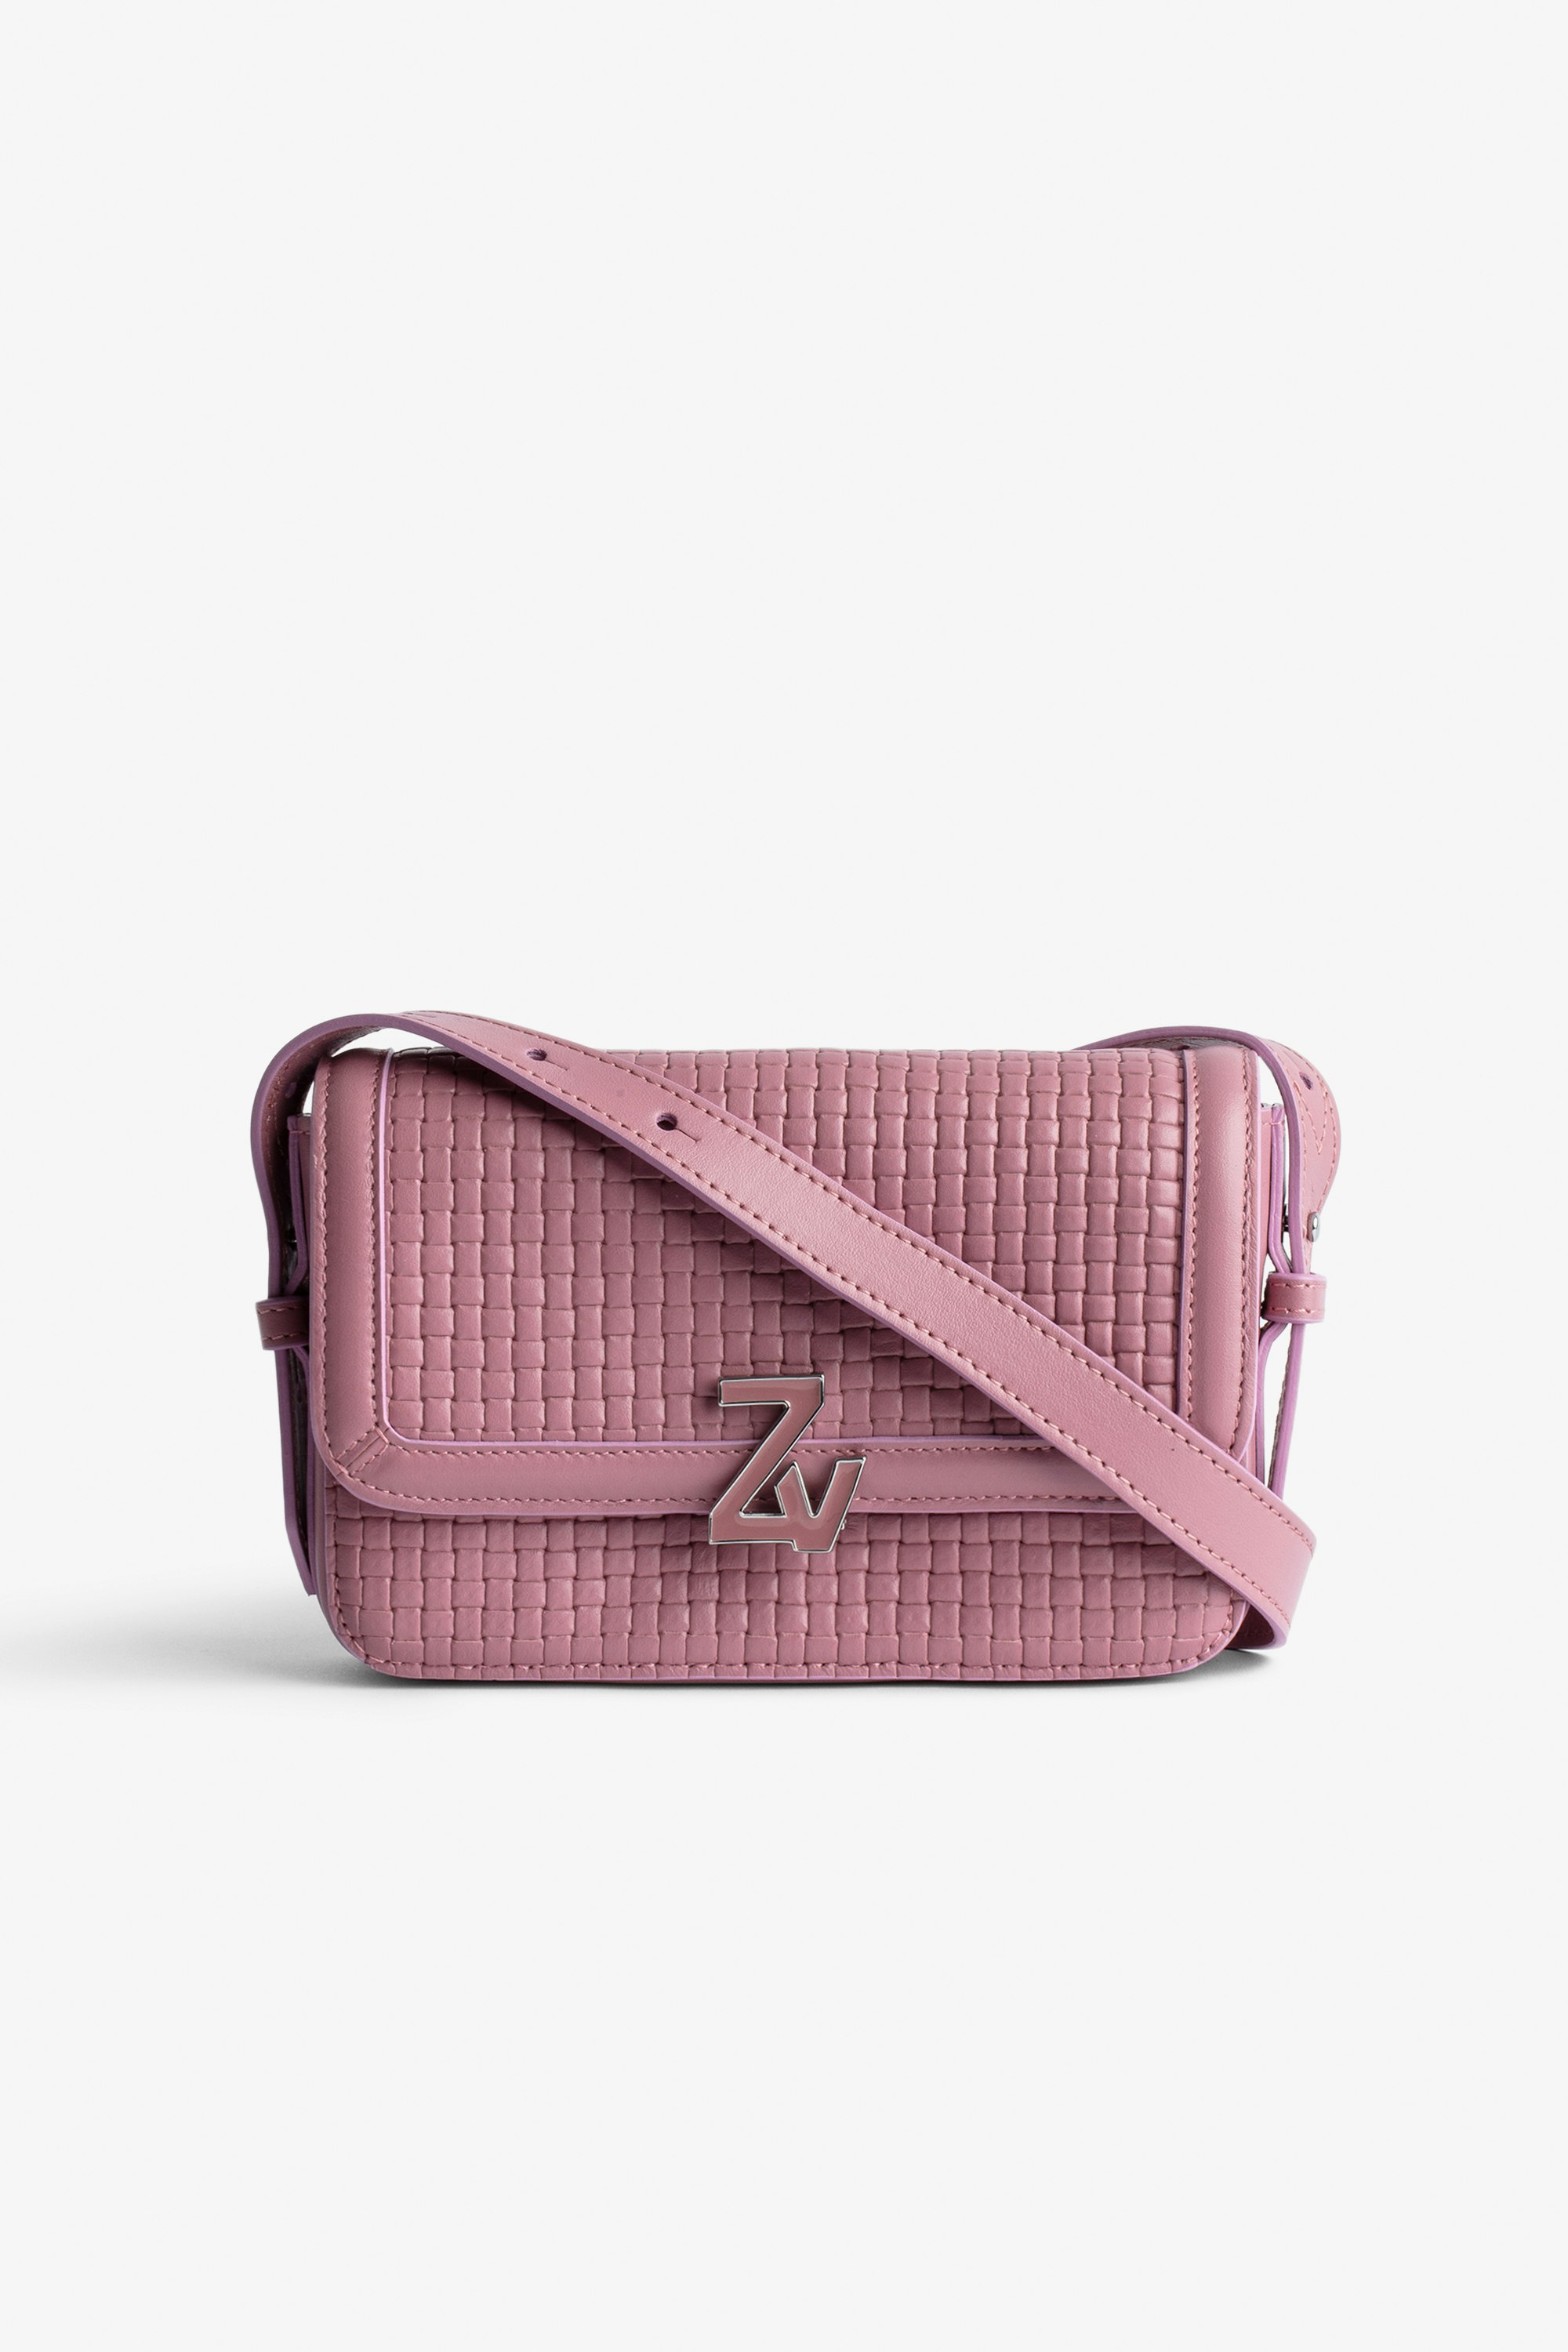 Tasche ZV Initiale Le Mini  Kleine Damen-Handtasche aus geflochtenem Leder in Rosa mit Schulterriemen und ZV-Schließe